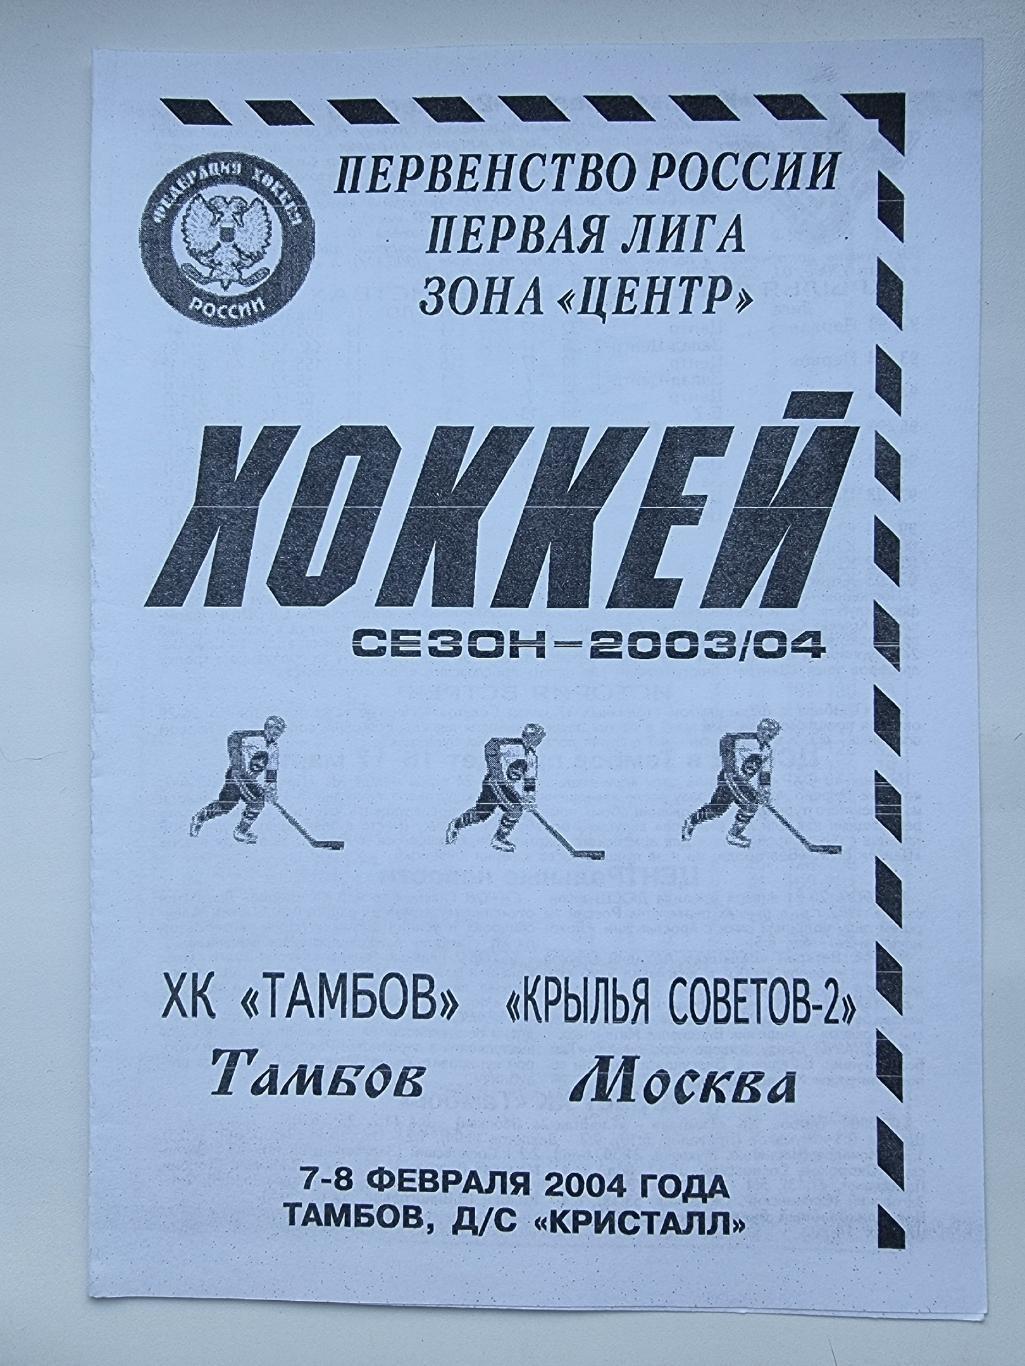 ХК Тамбов - Крылья Советов Москва 7/8 февраля 2004